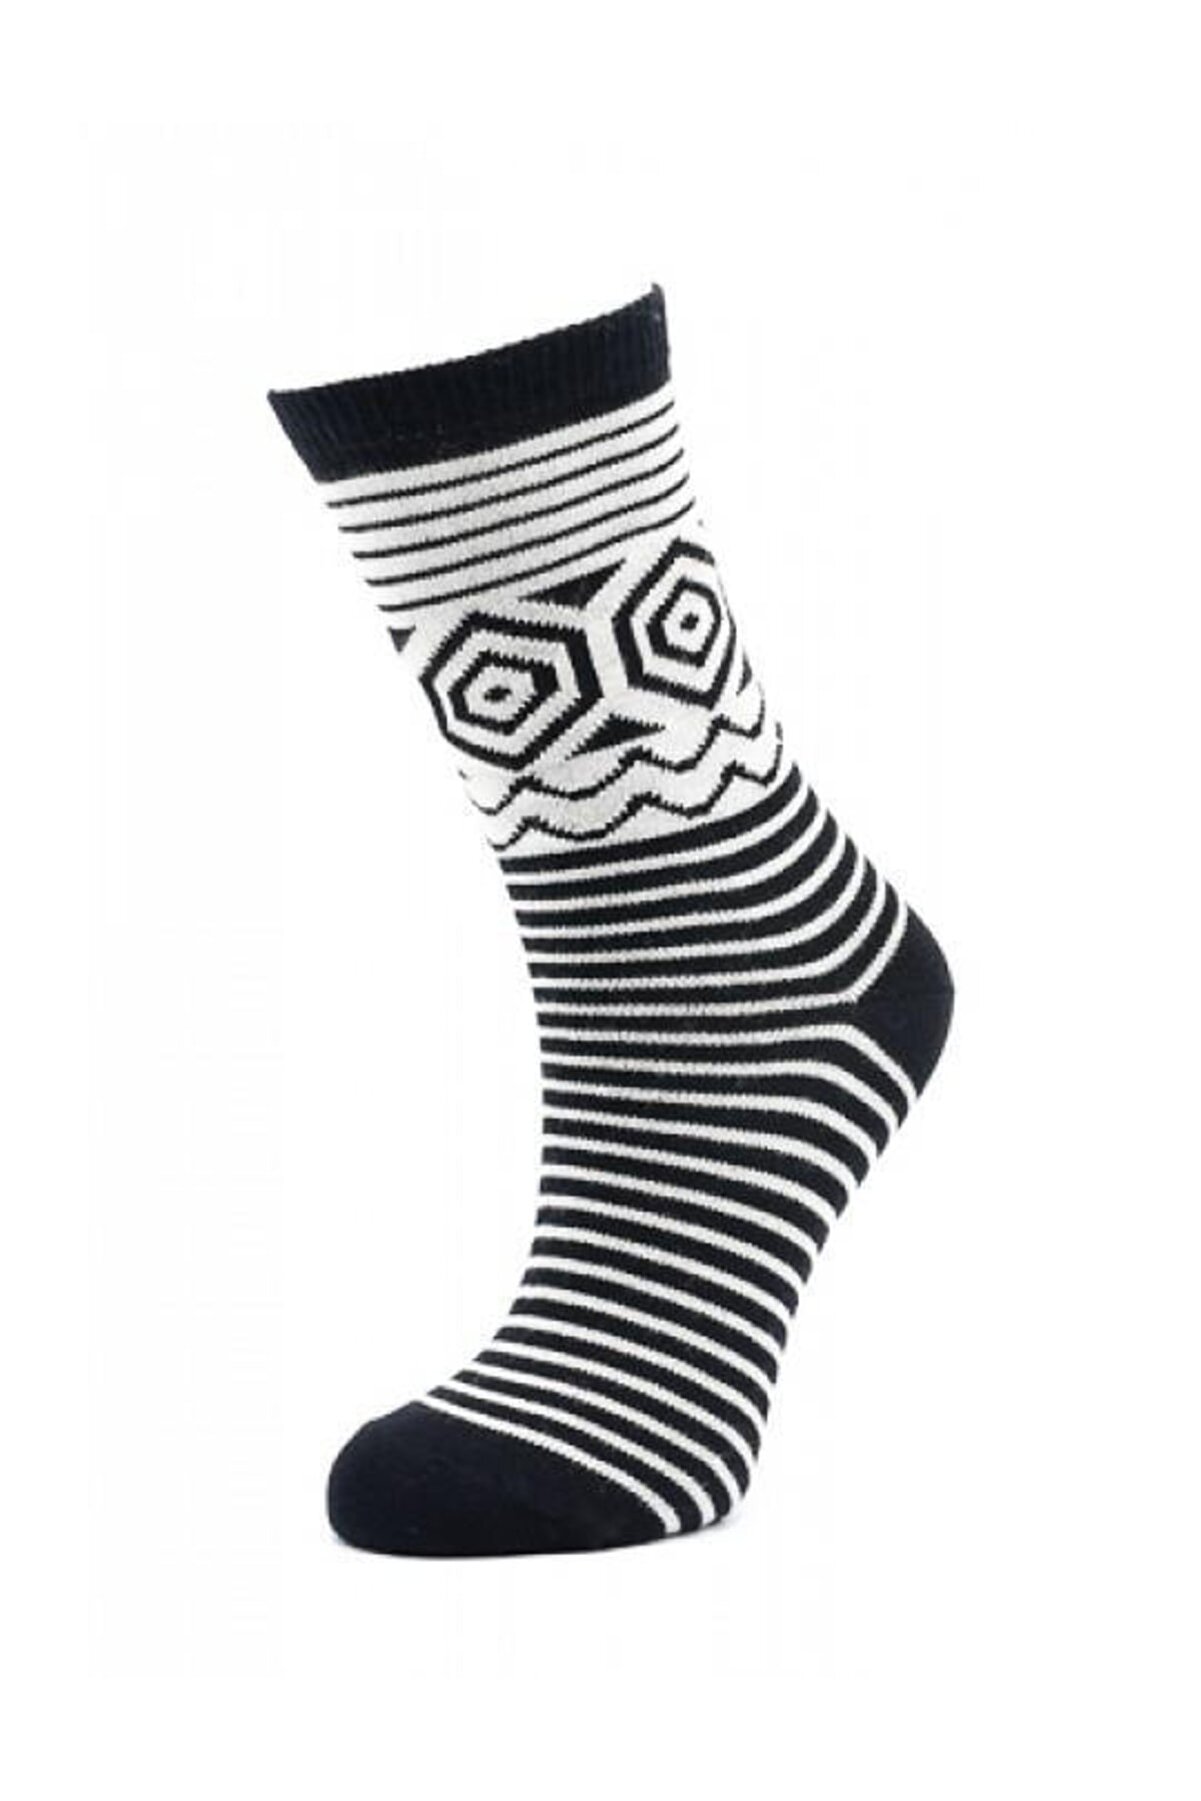 Style Kadın Pamuklu Çiftkat Soket Çorap | Sb4770